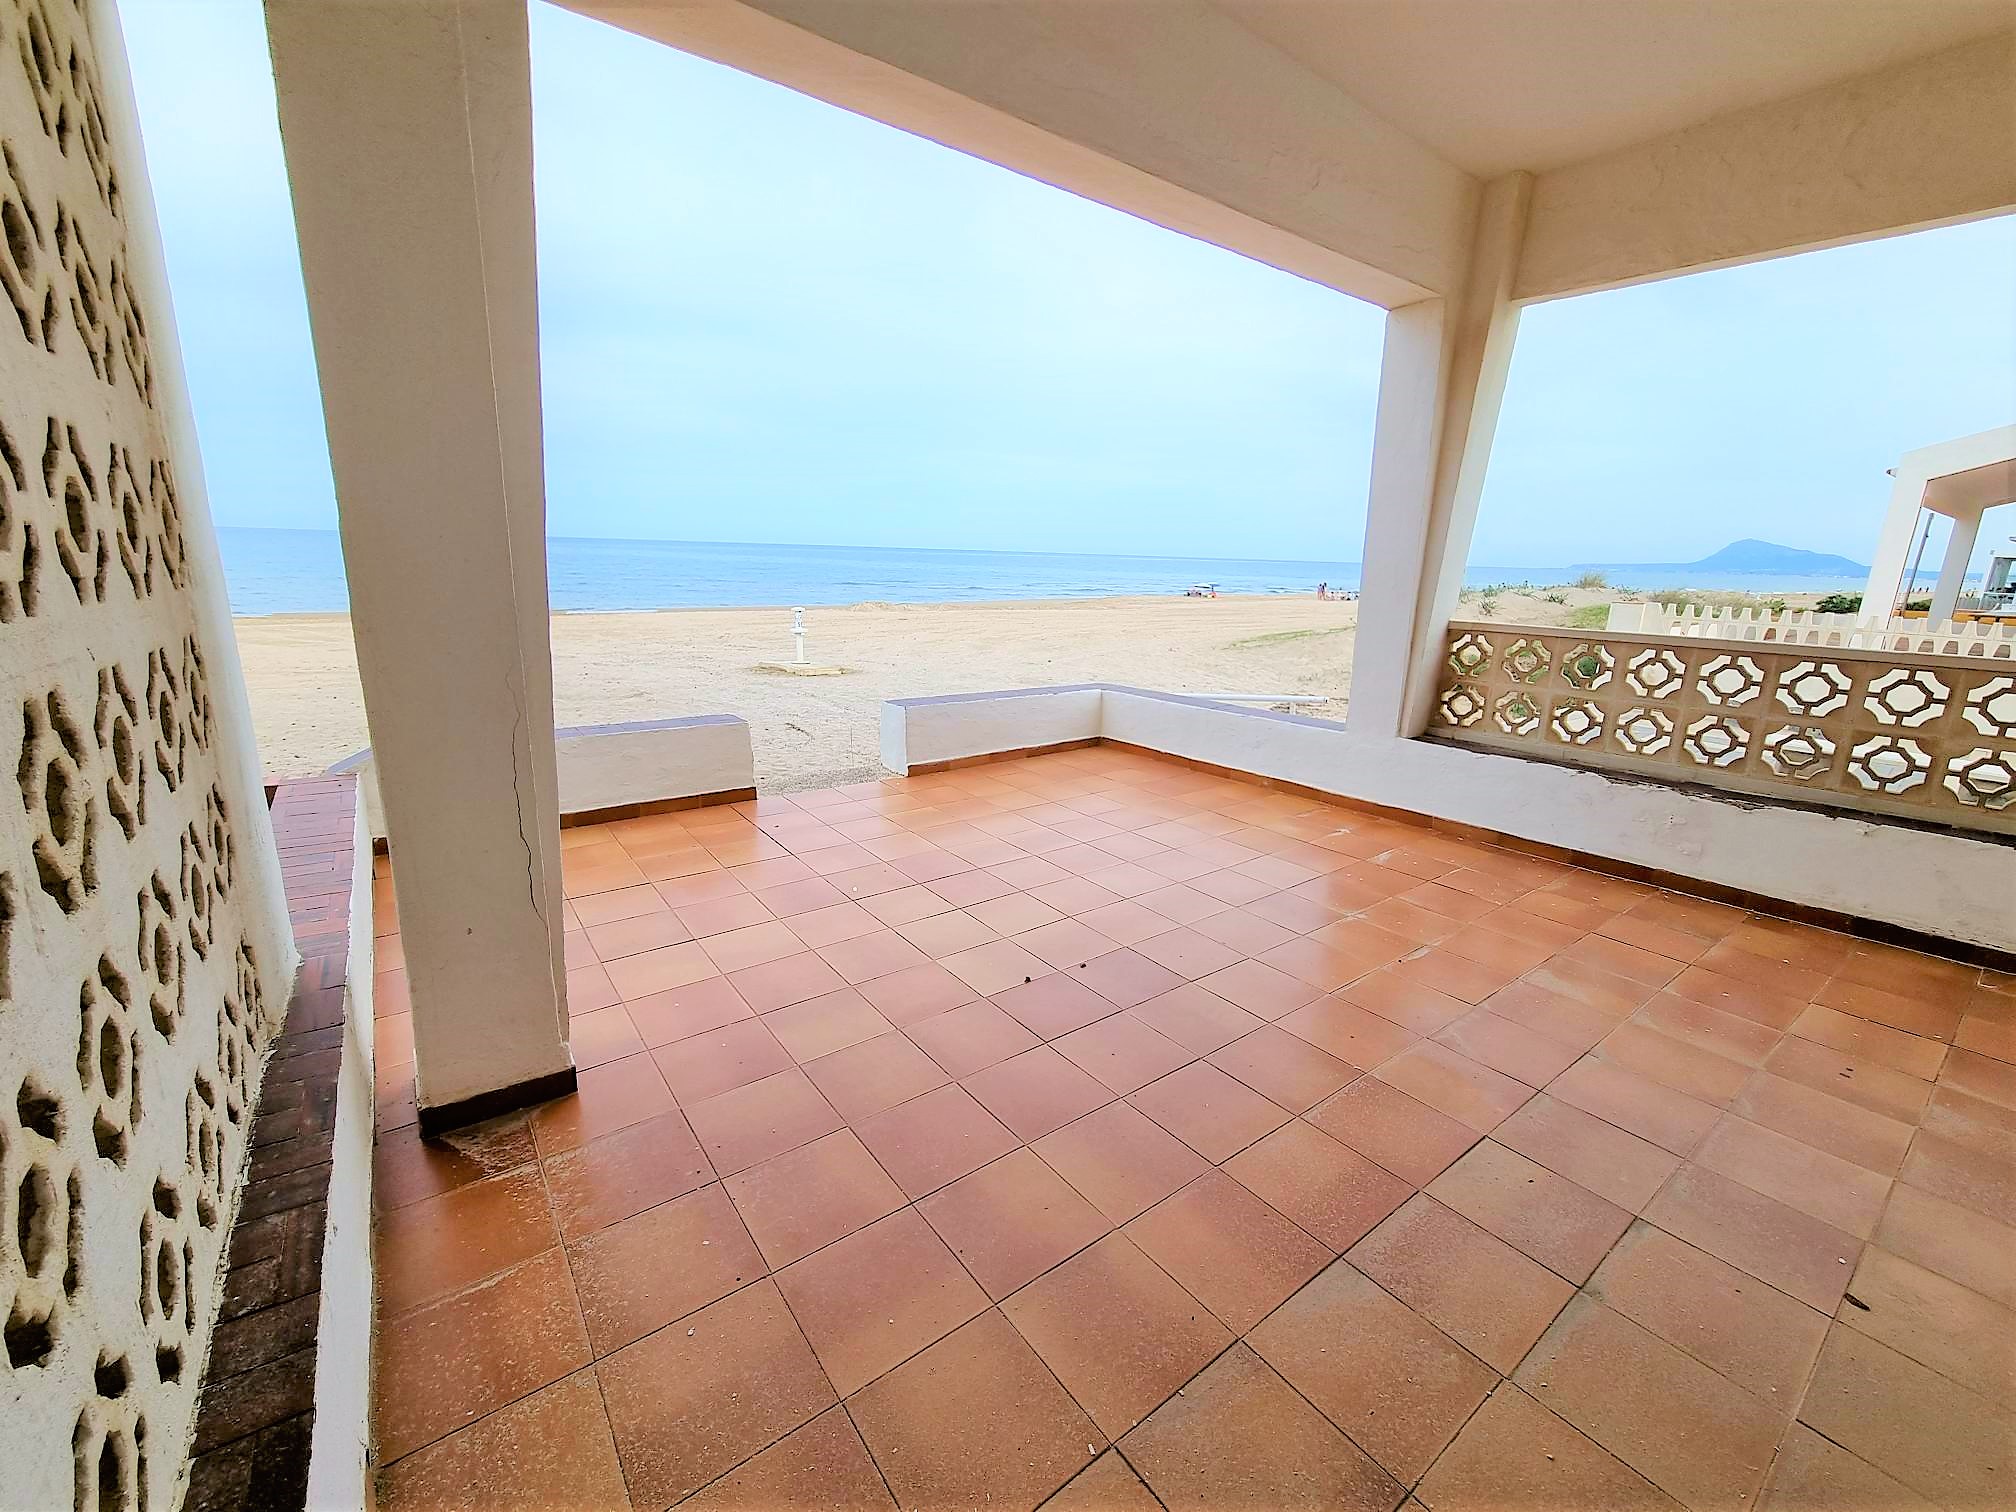 Villa zum Verkauf in Oliva direkt am Strand